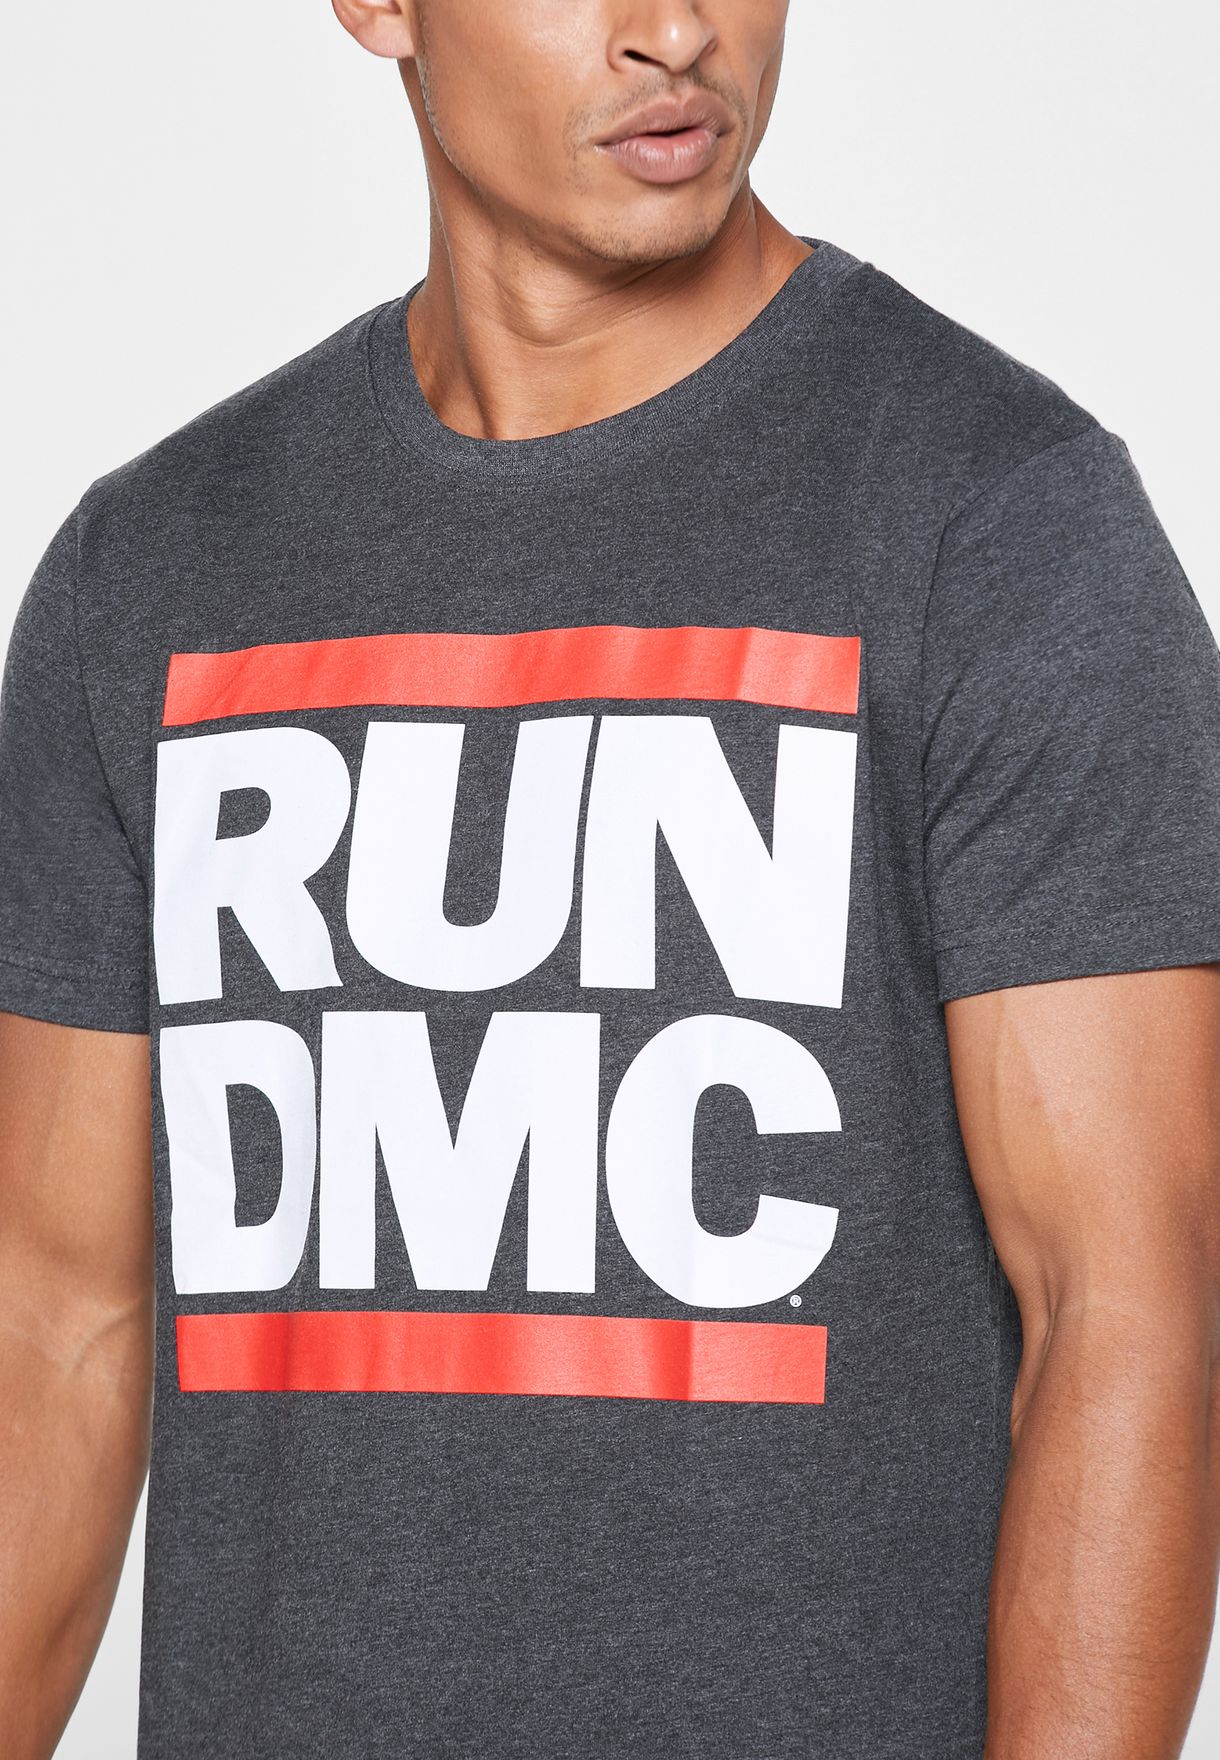 run dmc t shirt india